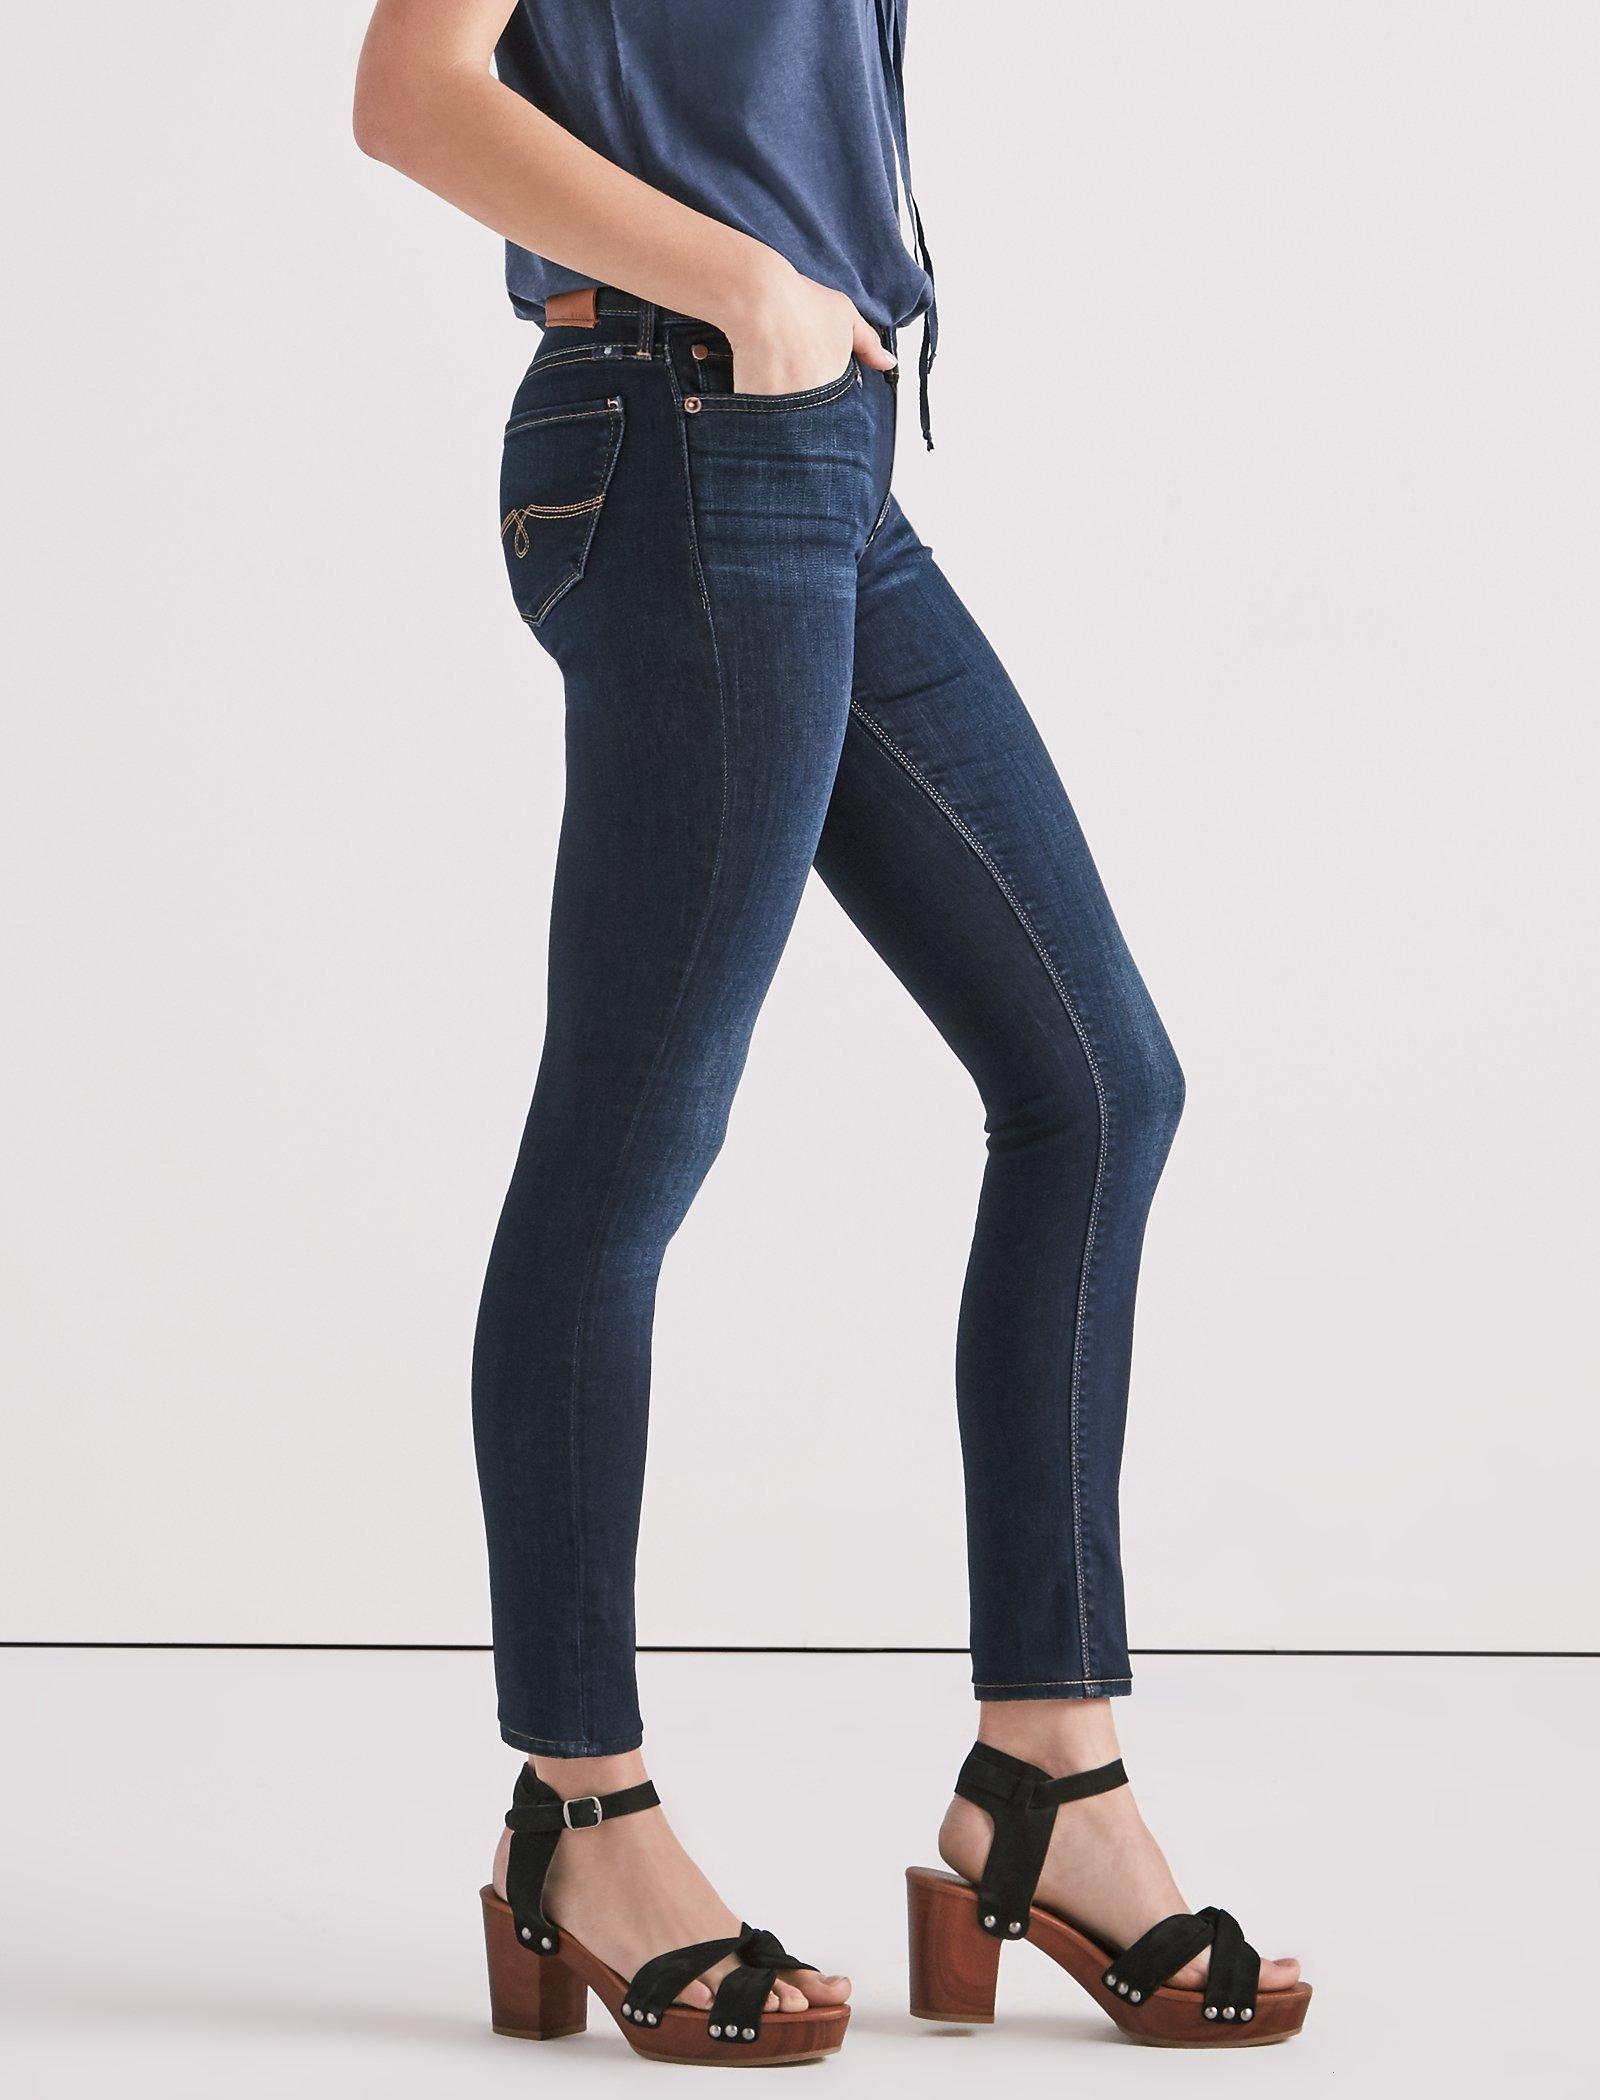 lucky brand jeans women's tall